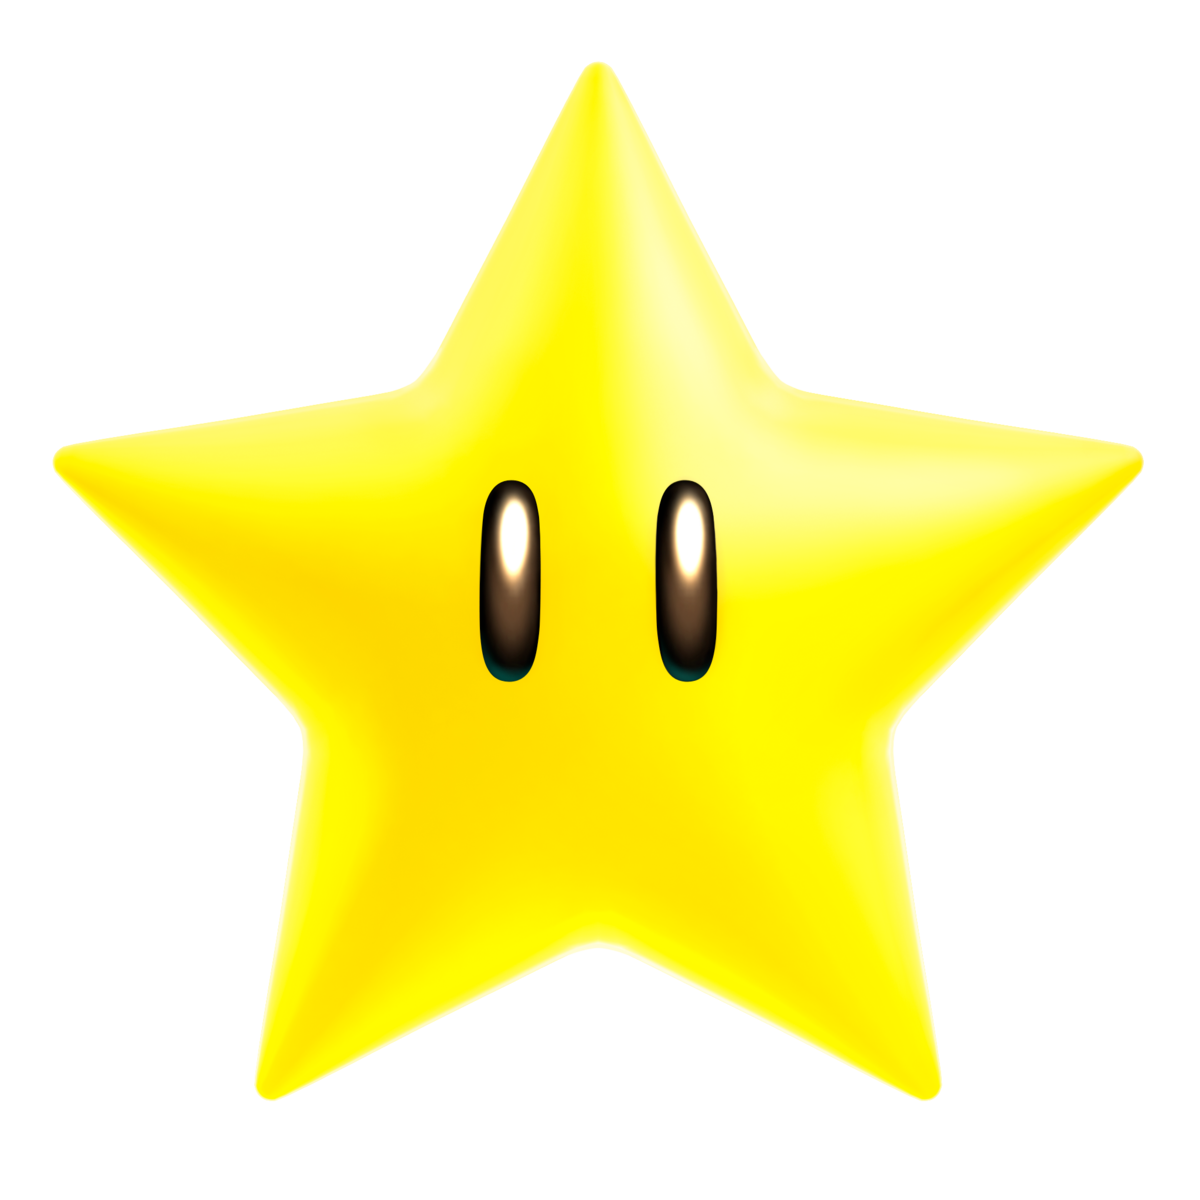 Super Star, Newer Super Mario Bros. Wiki